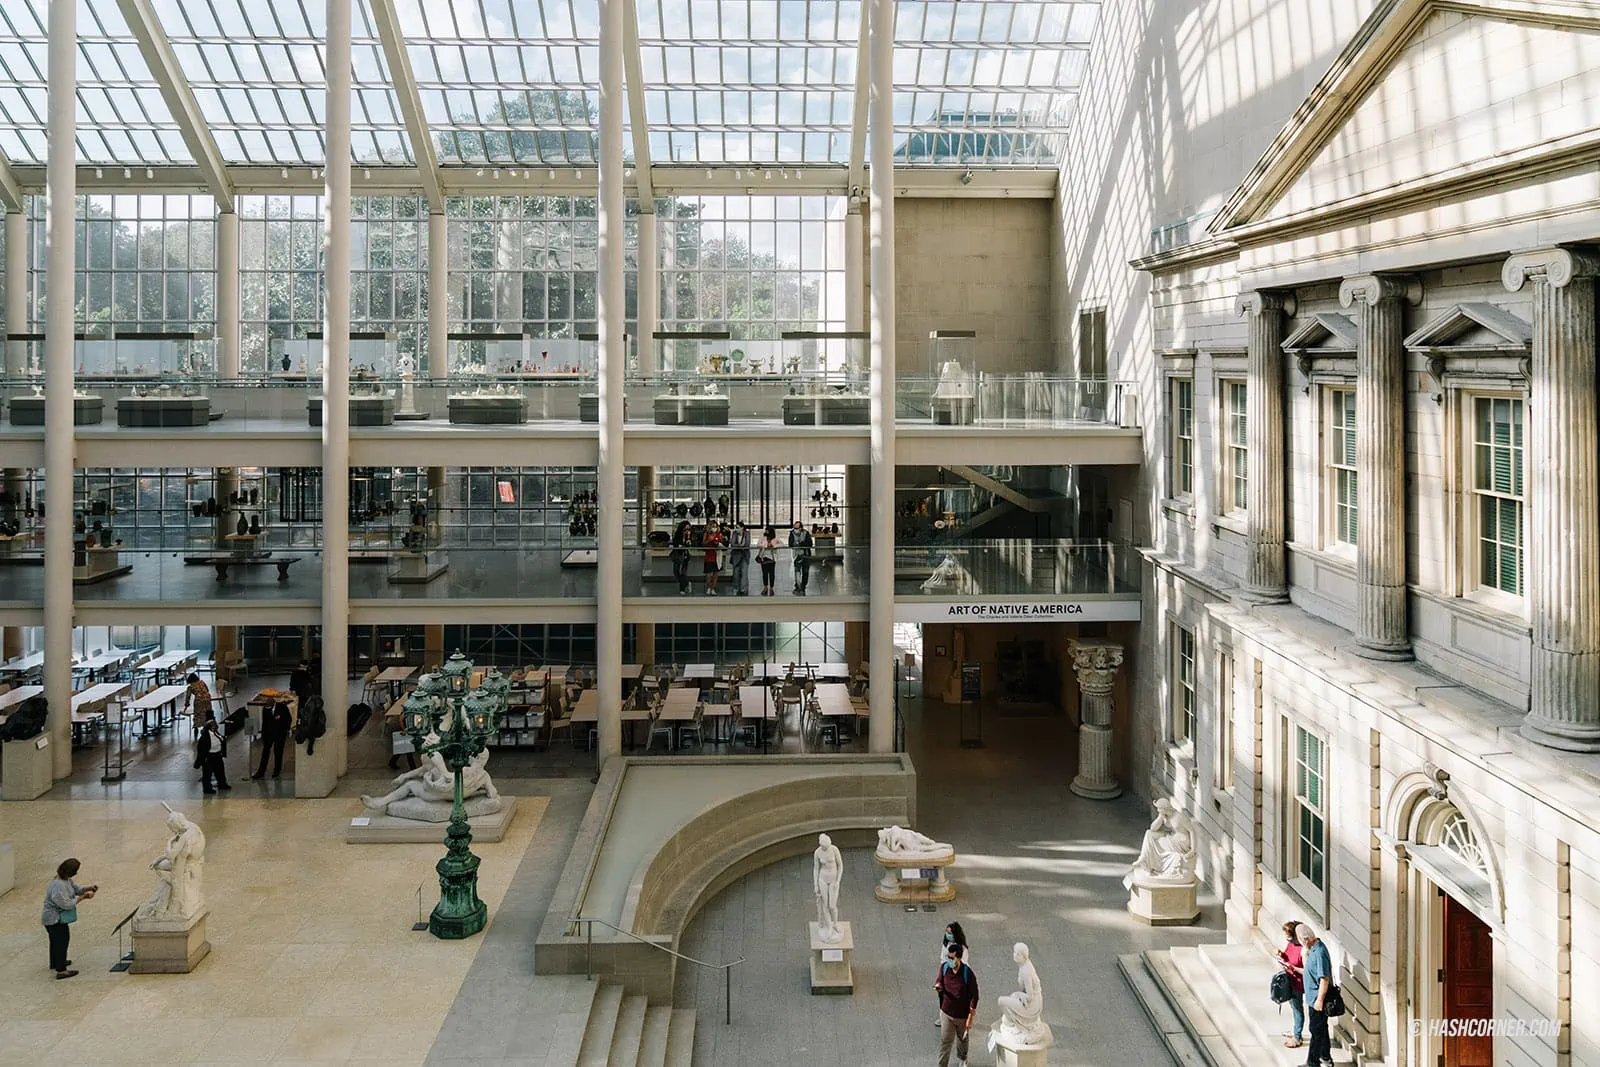 รีวิว THE MET x นิวยอร์ก พิพิธภัณฑ์ศิลปะที่ใหญ่ที่สุดในอเมริกา